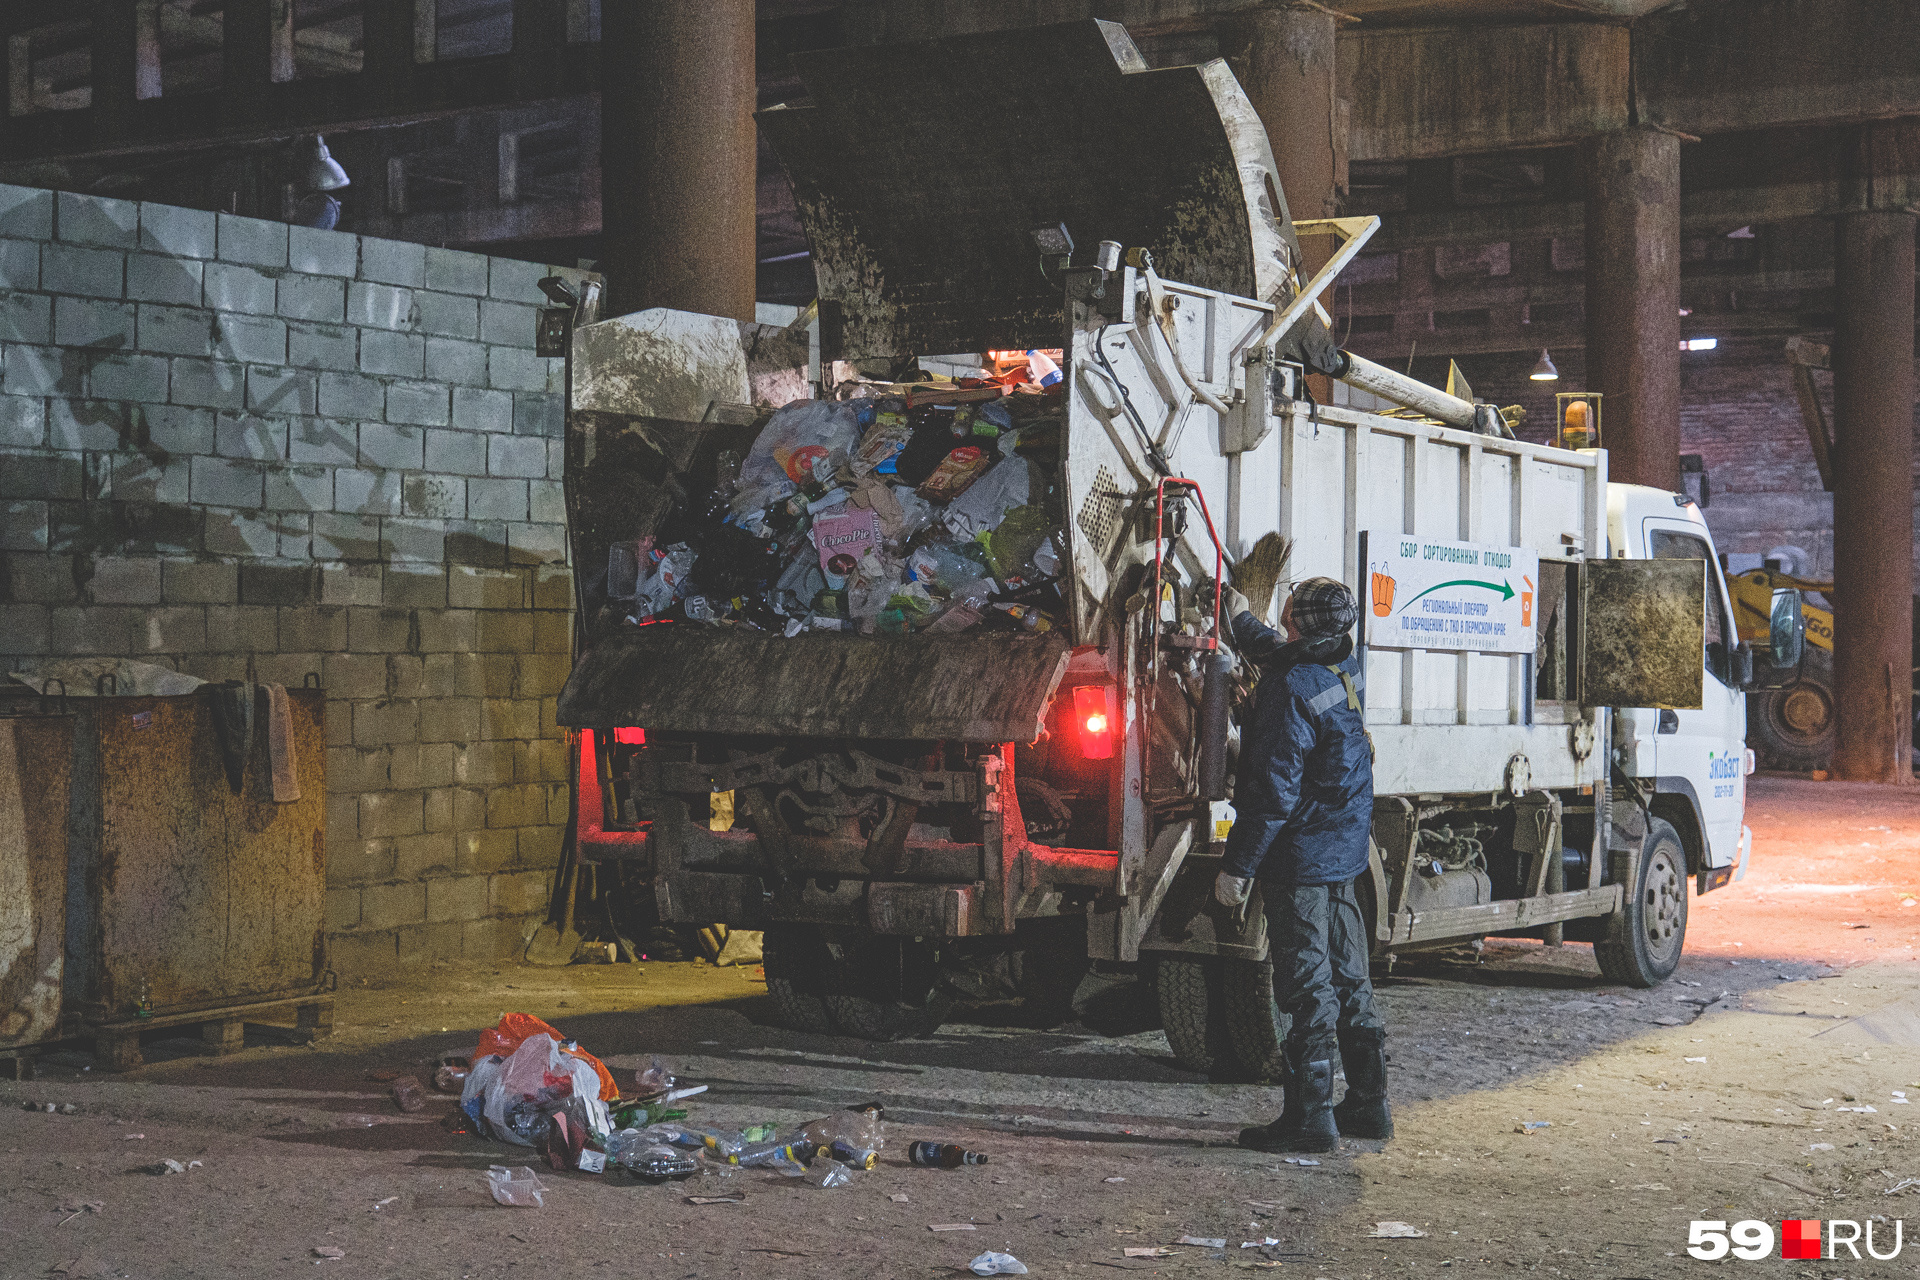 Отходы из специальных мусоровозов не смешивают с обычным мусором — они лежат в разных кучах 